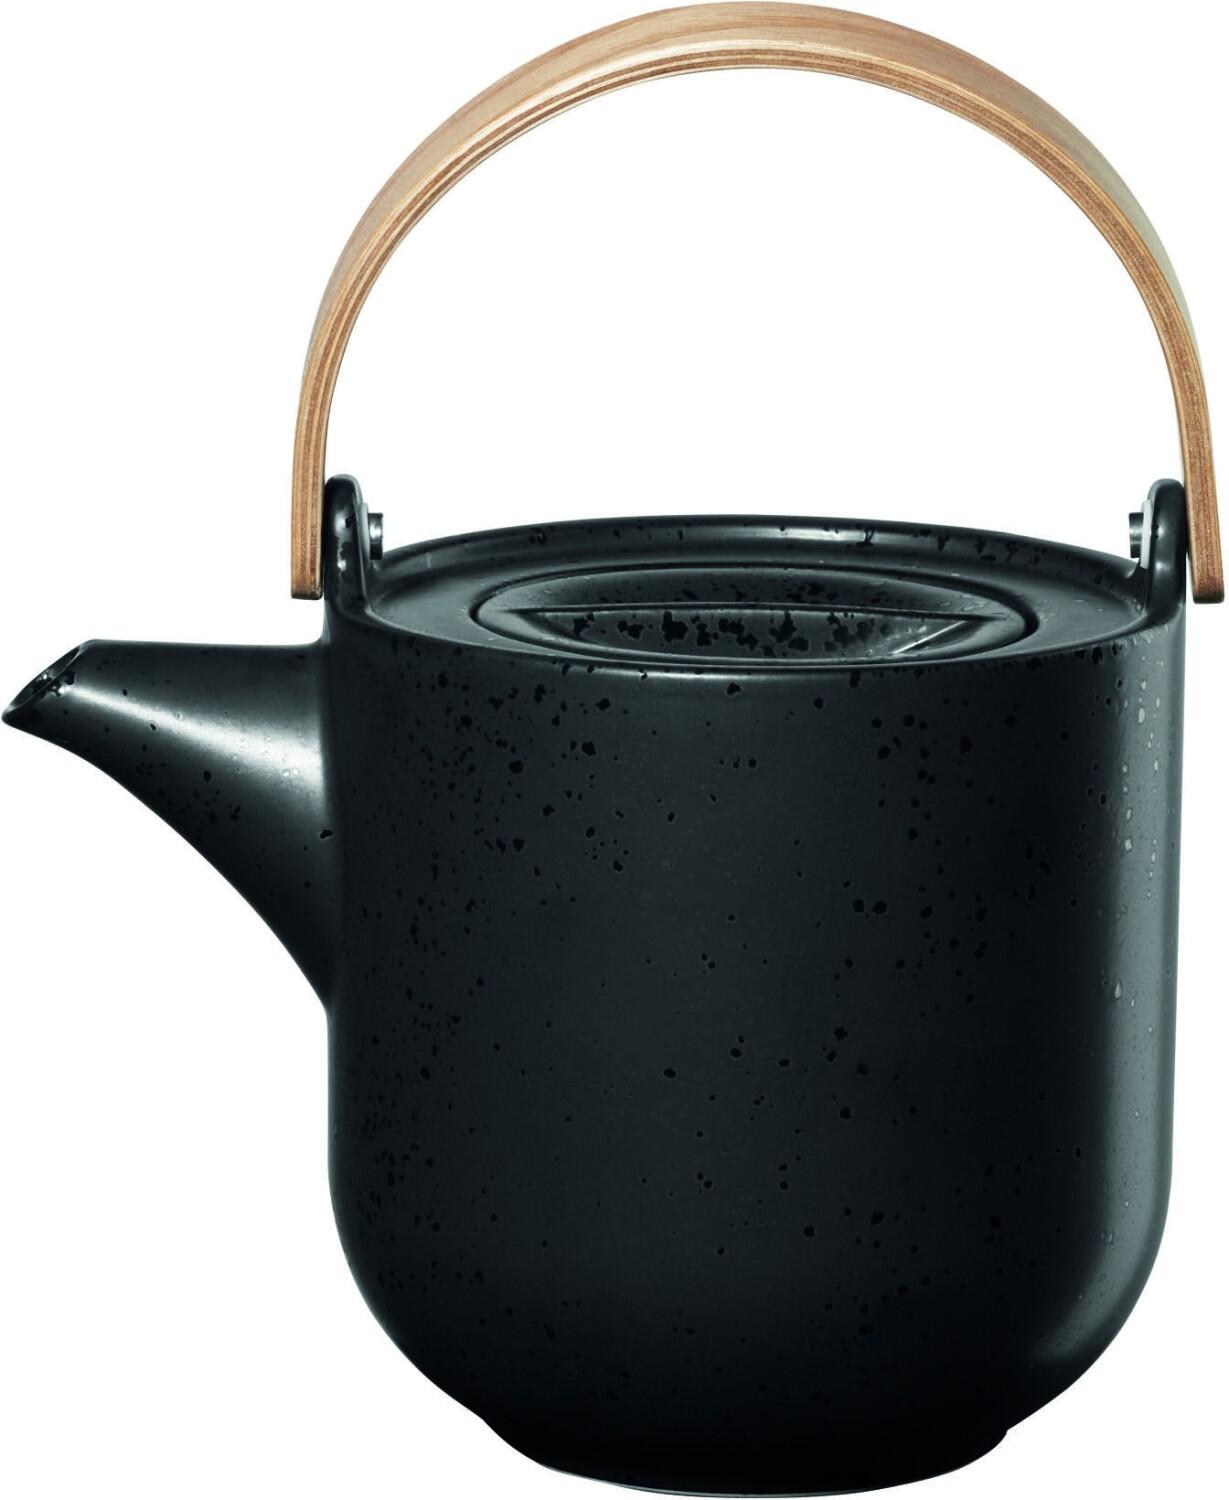 ASA Teekanne mit Holzgriff coppa kuro bei KochForm | Teekannen